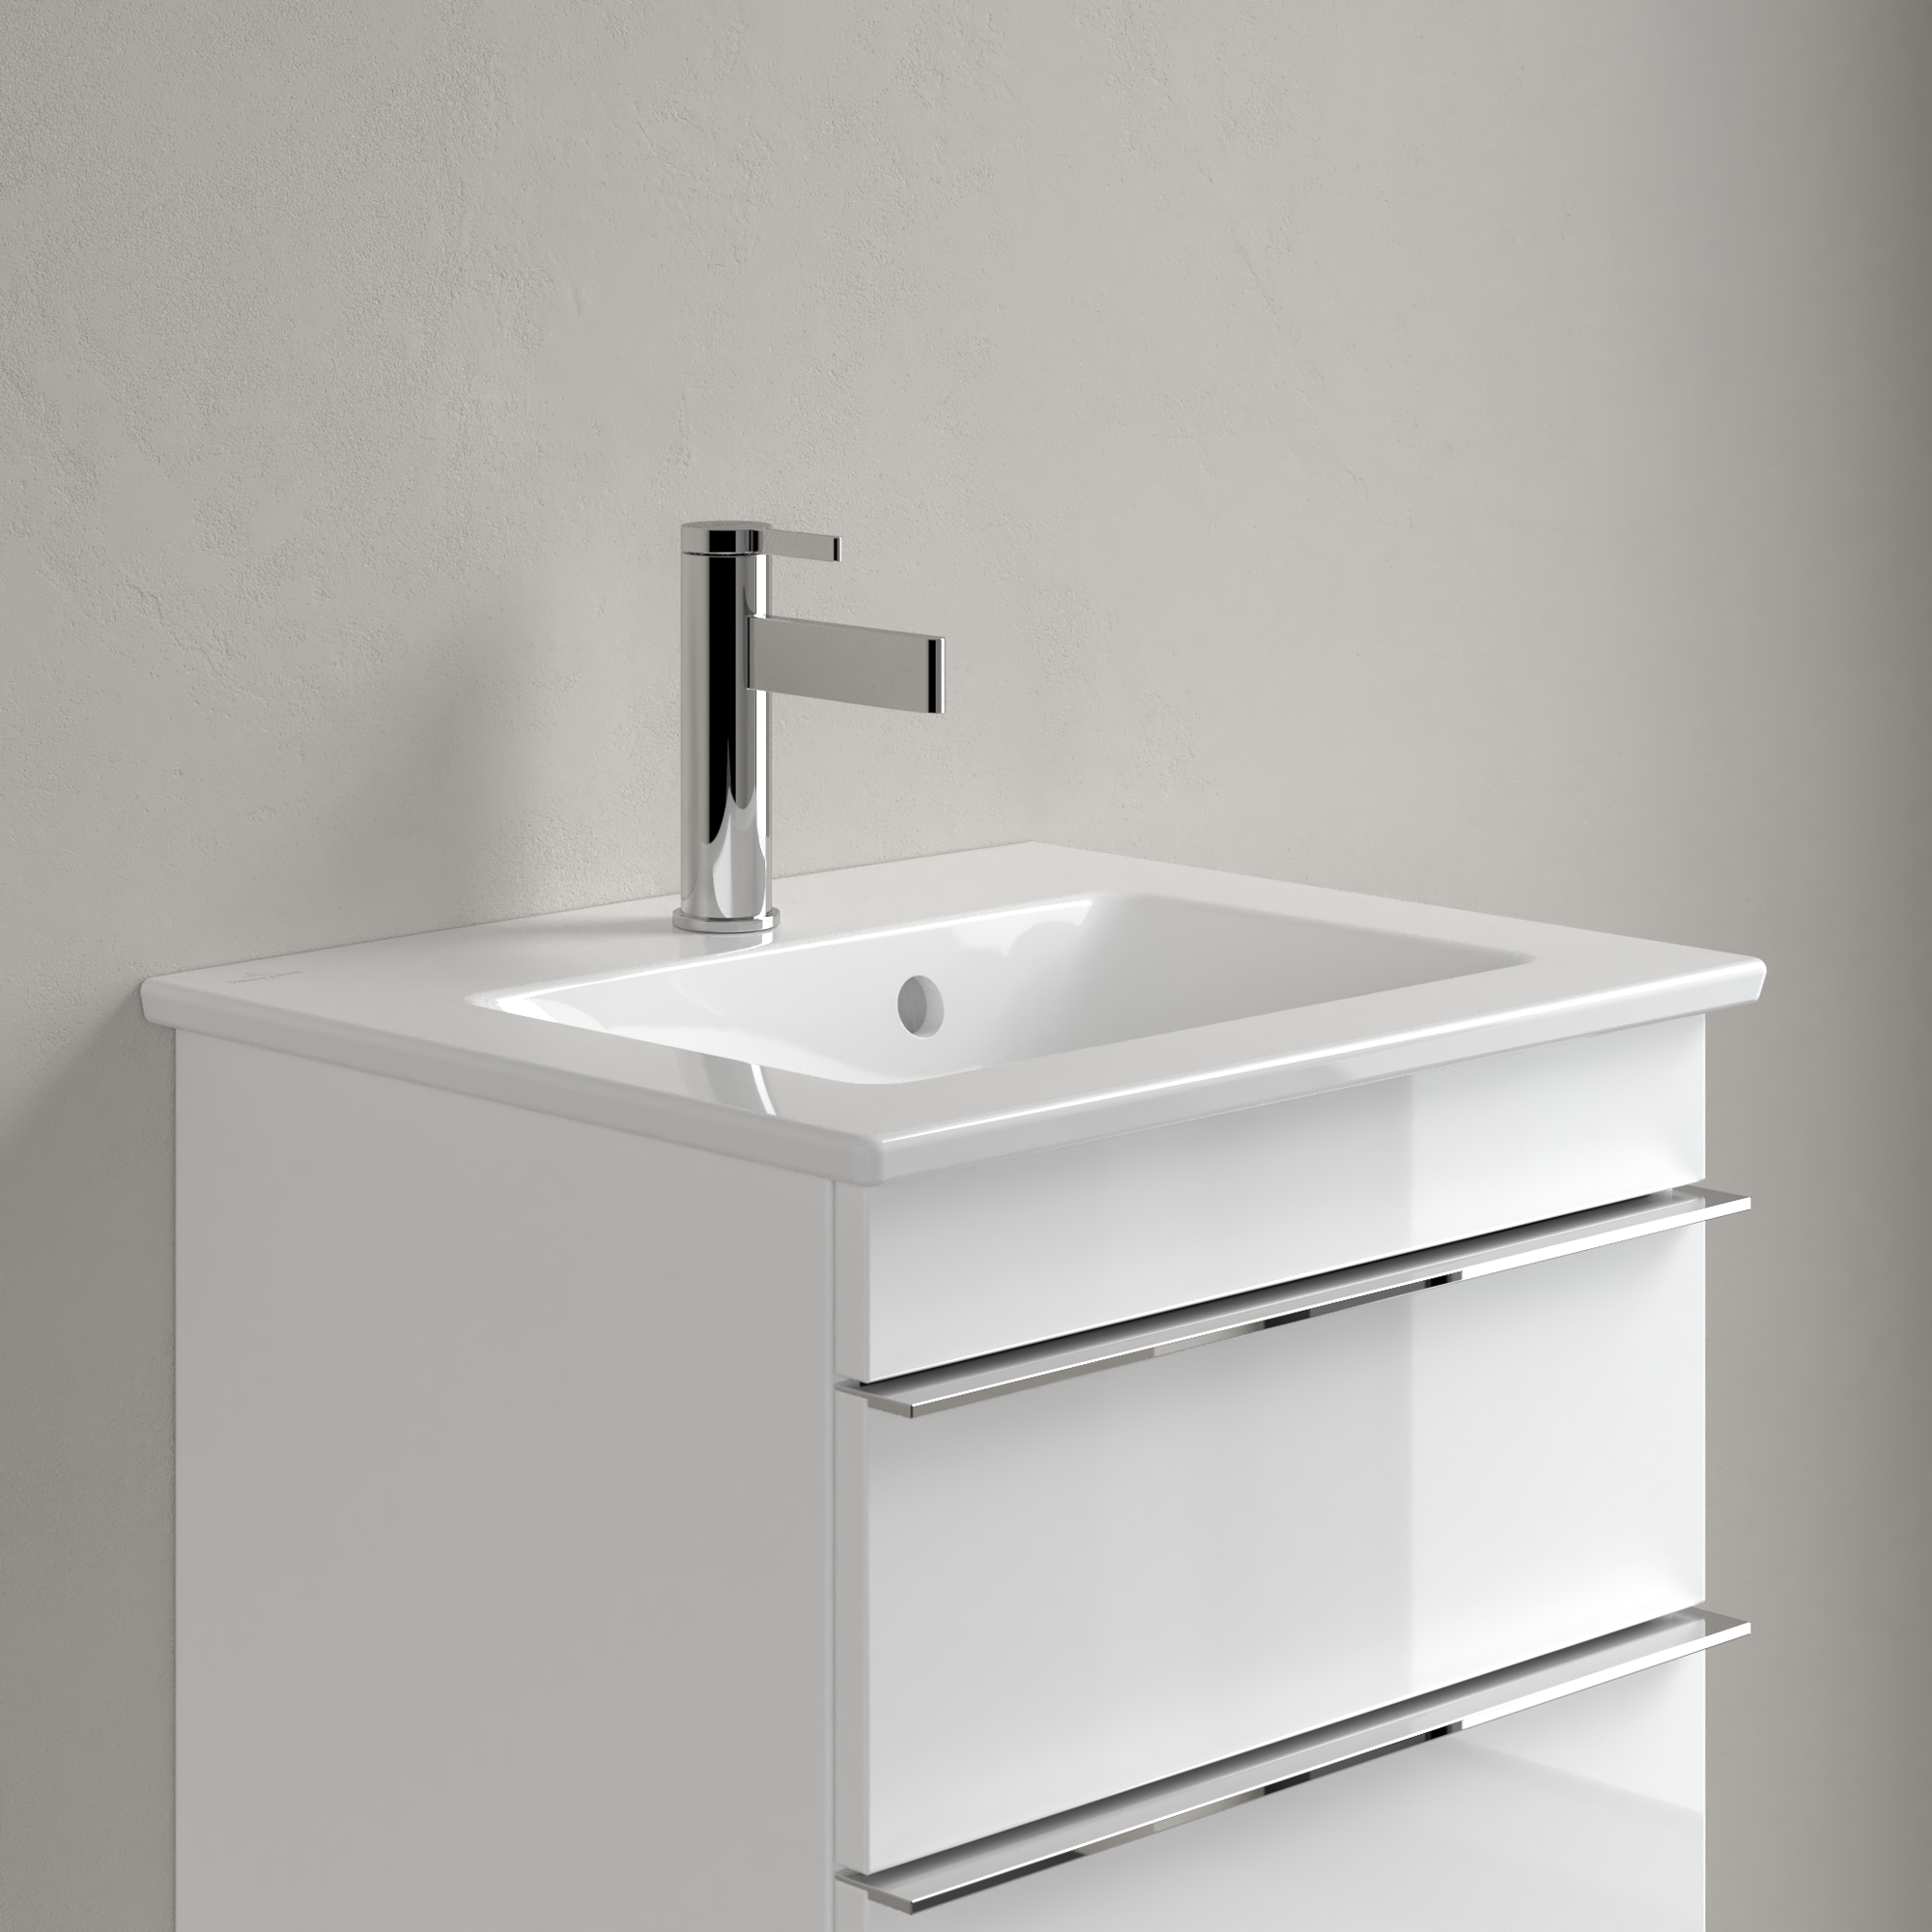 Handwaschbecken 'Venticello' porzellan, weiß-alpin + product picture